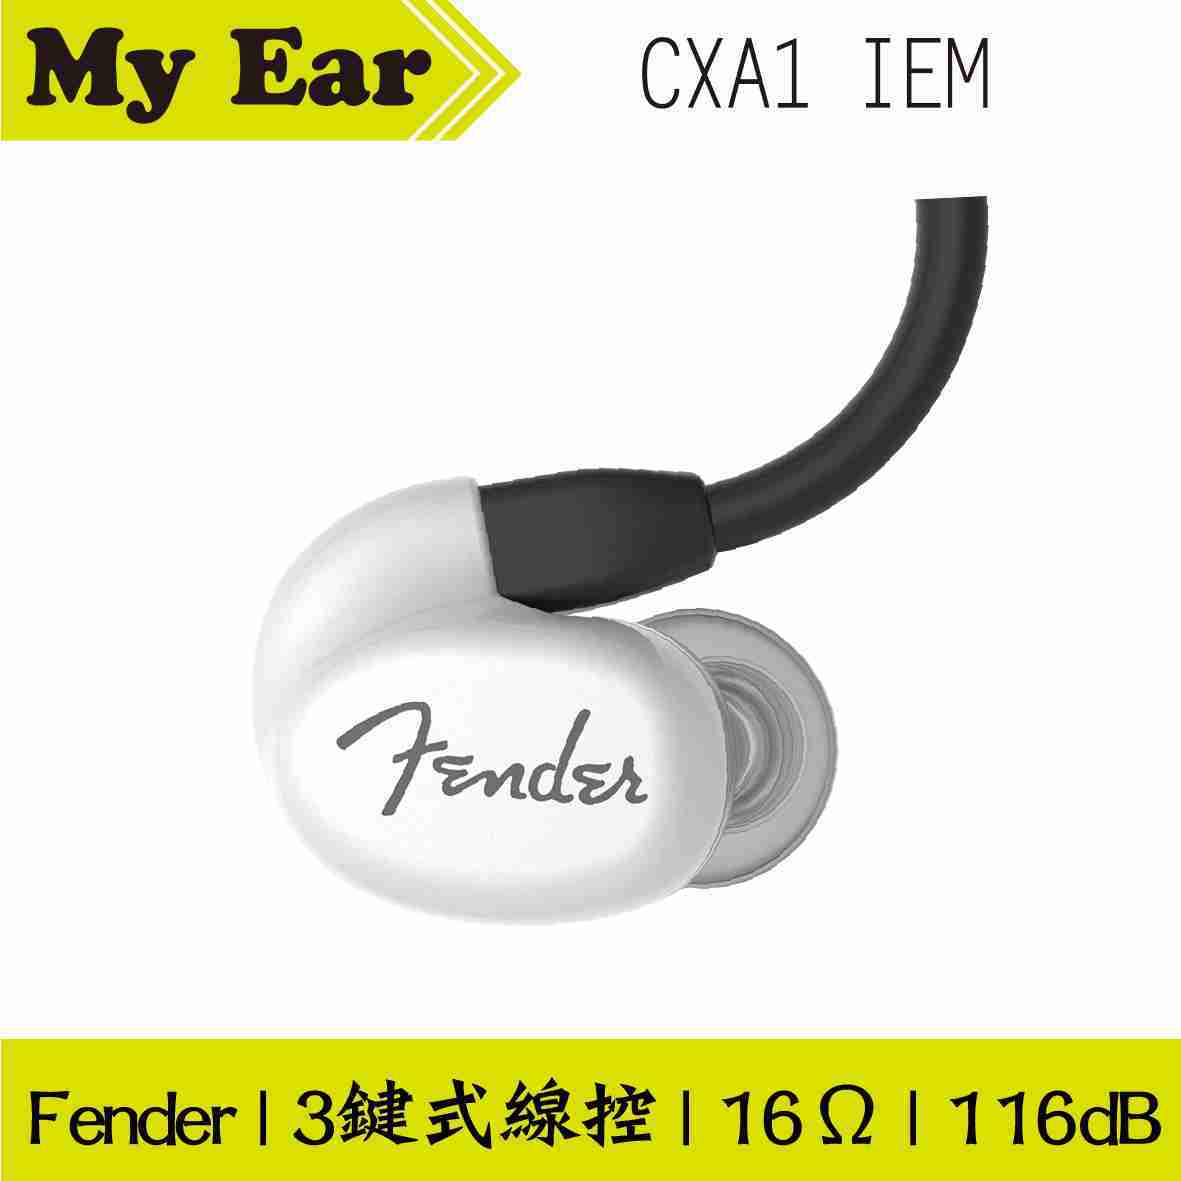 Fender CXA1 IEM 白色 可通話 線控式 耳道式耳機 | My Ear 耳機專門店